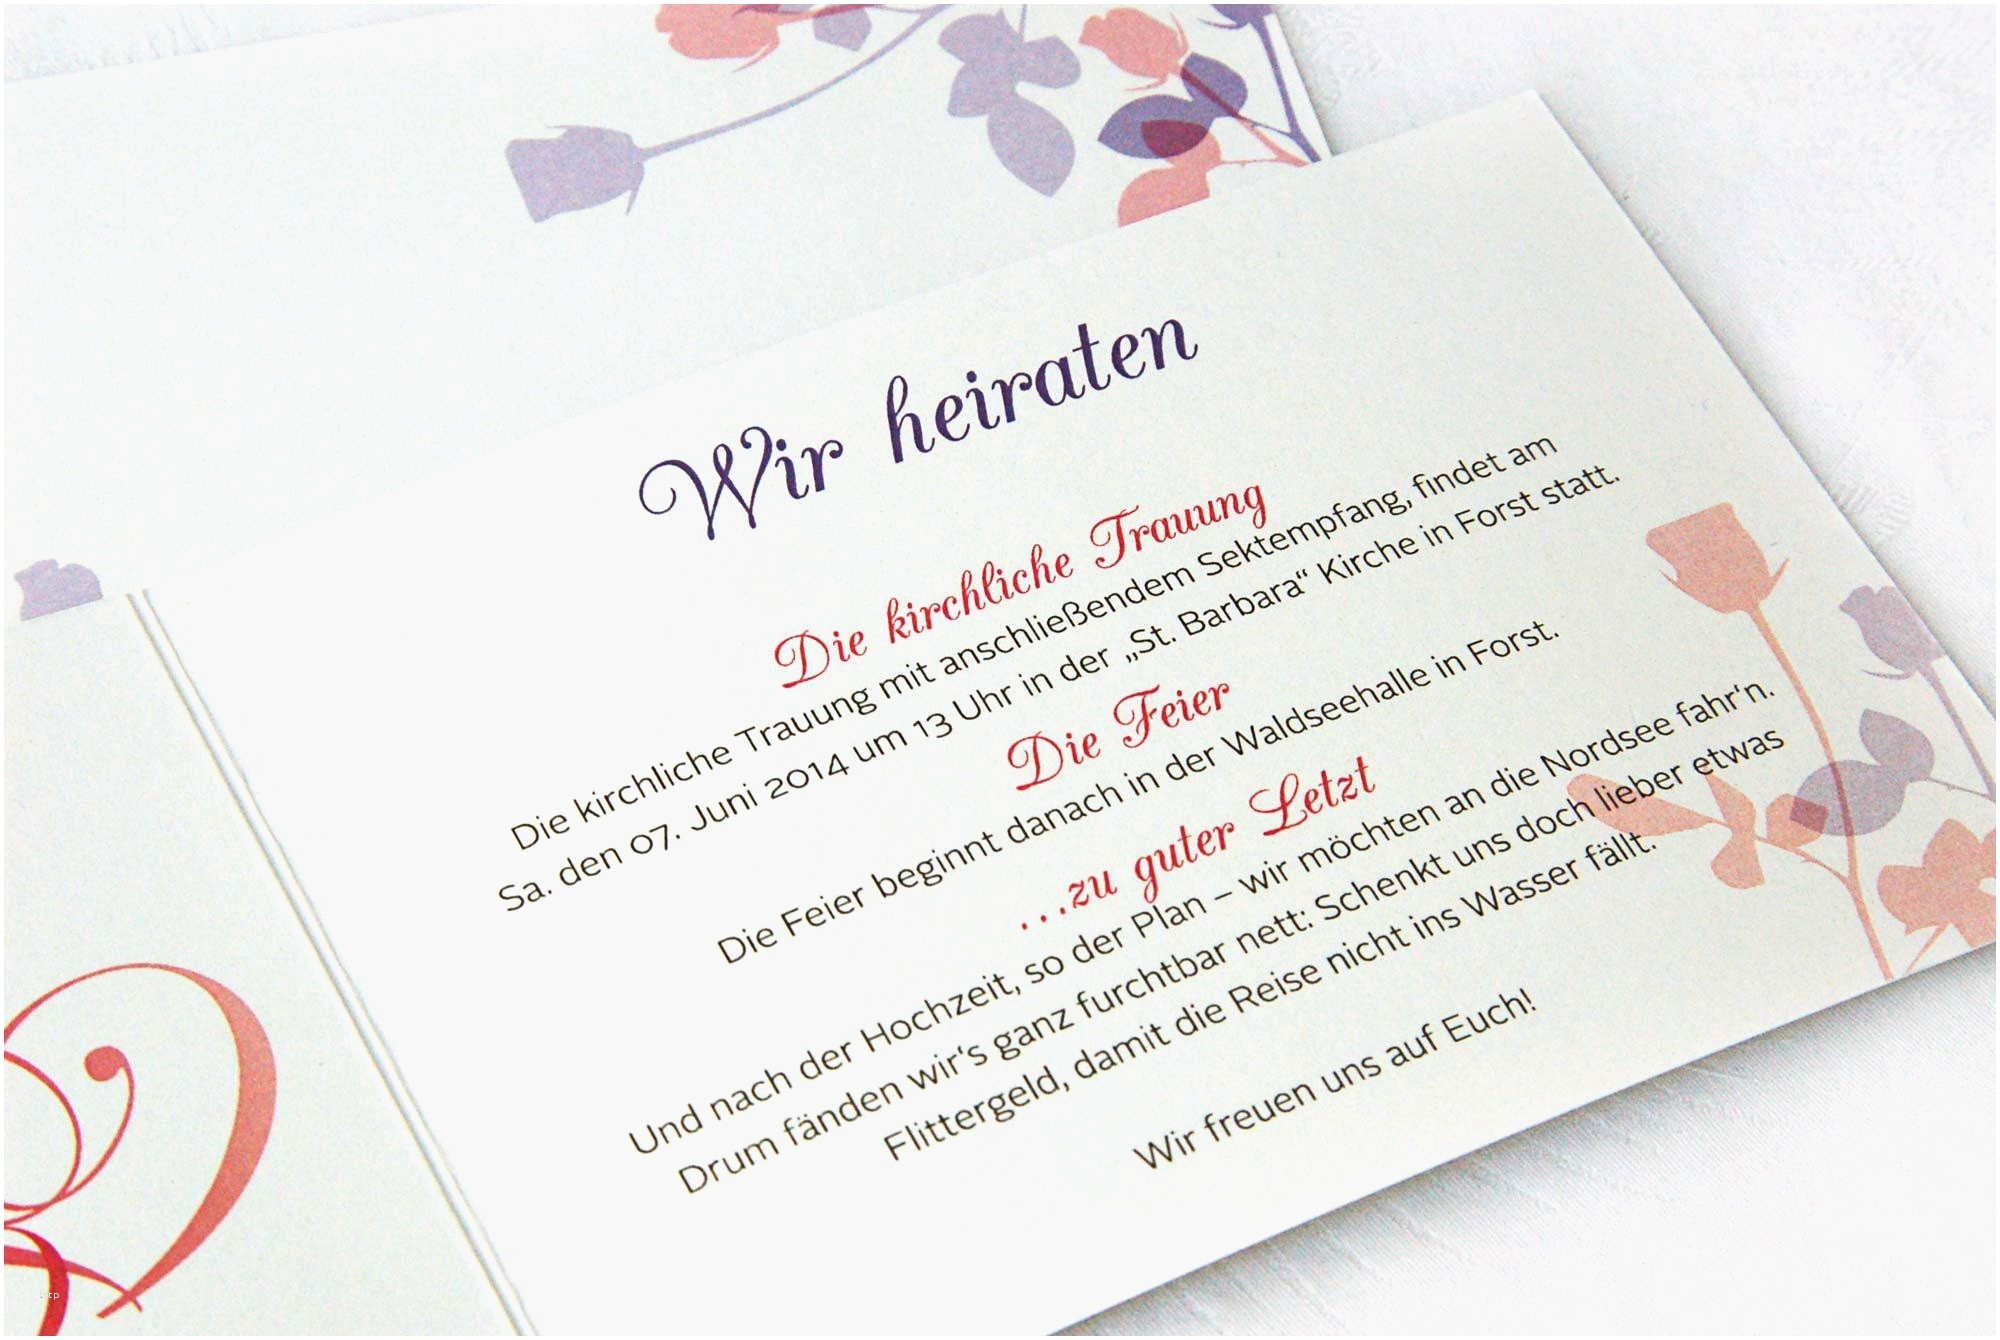 Hochzeitssprüche Einladung
 Hochzeits Karte Einzigartig Hochzeitssprüche Einladung